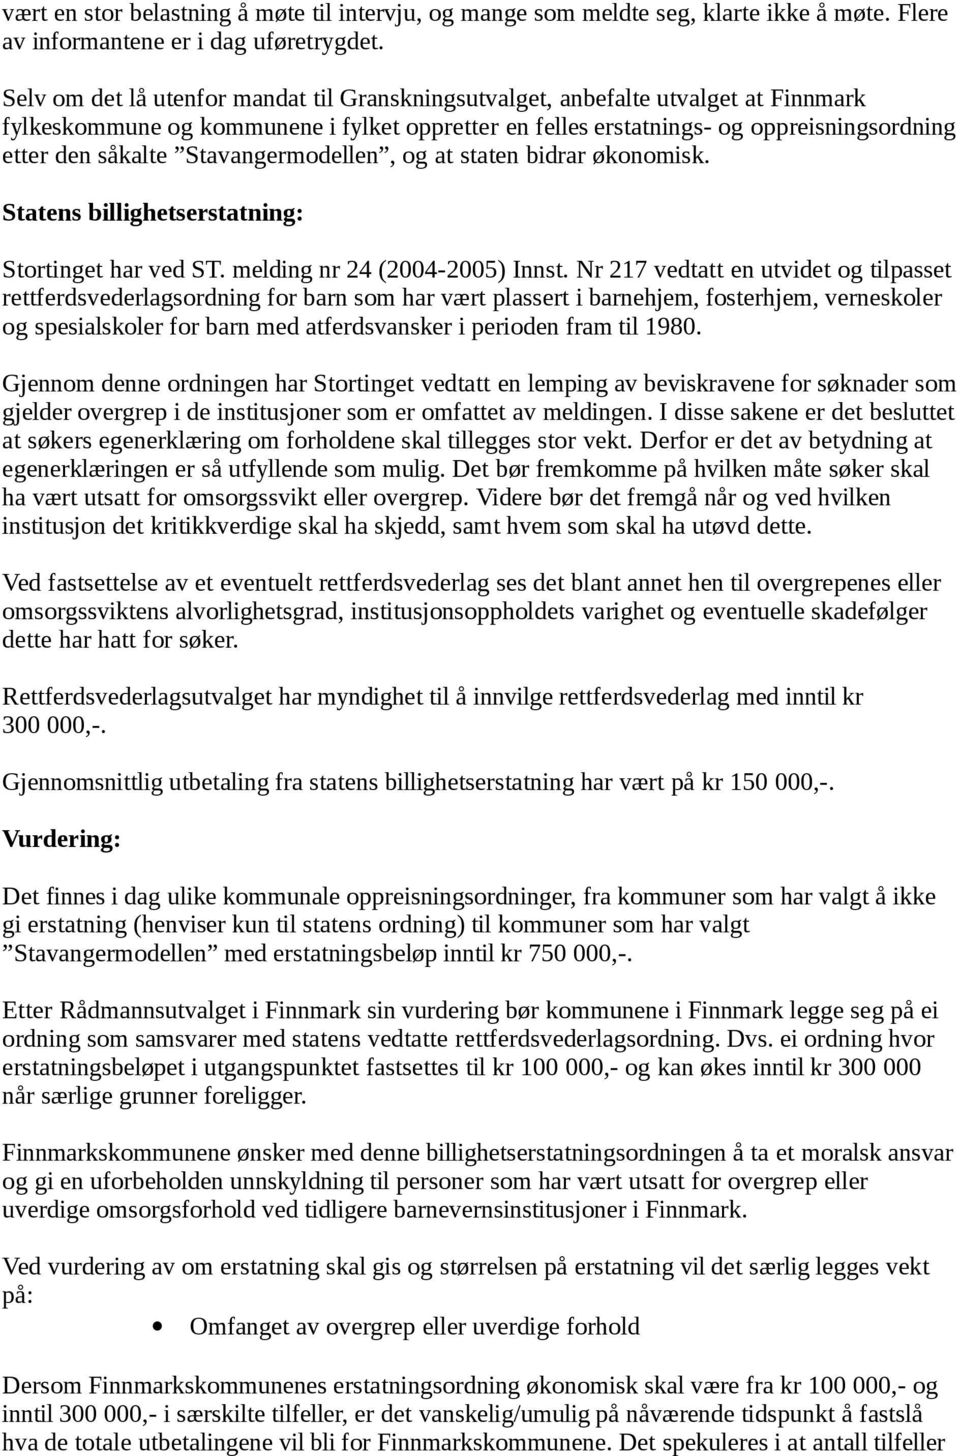 Stavangermodellen, og at staten bidrar økonomisk. Statens billighetserstatning: Stortinget har ved ST. melding nr 24 (2004-2005) Innst.